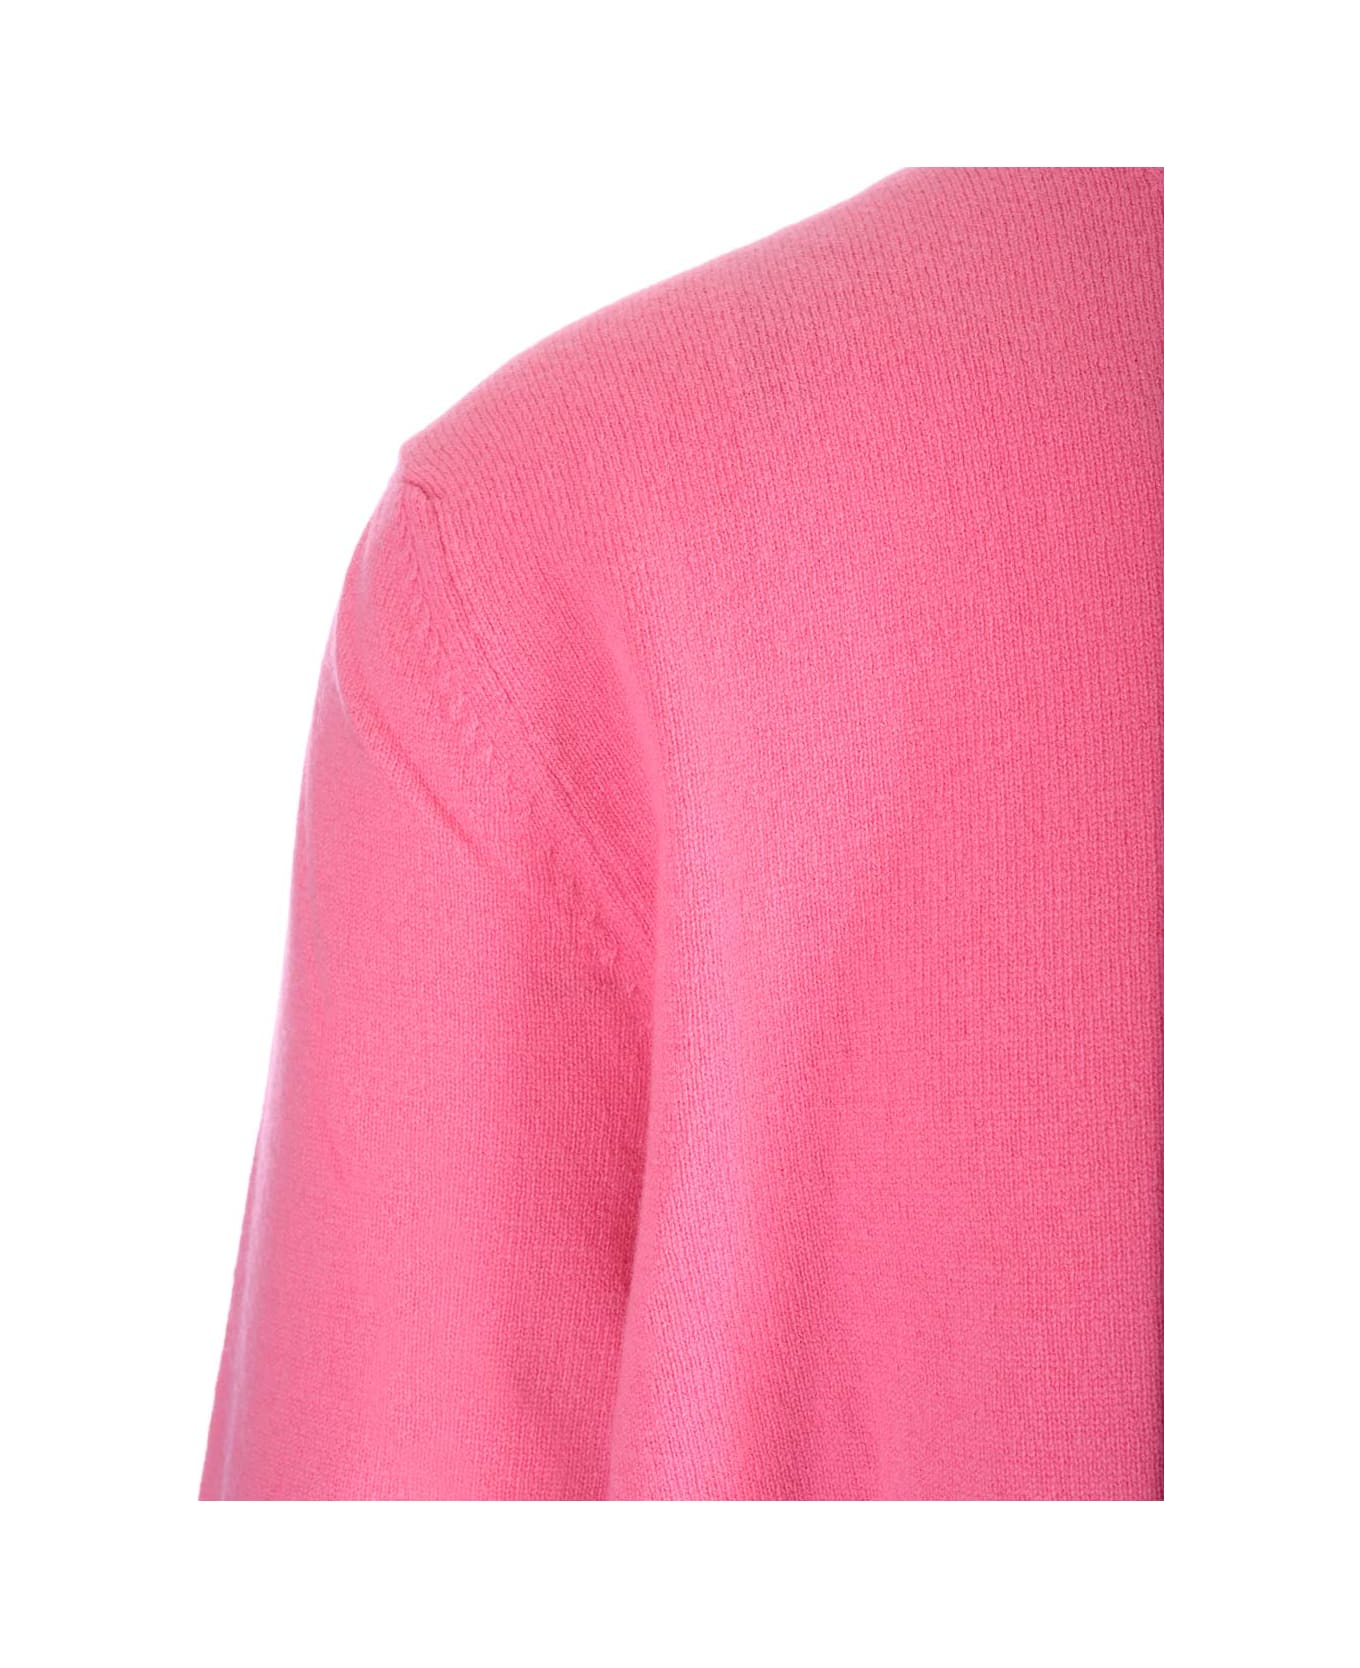 Comme des Garçons Shirt Pink Wool Sweater - Pink ニットウェア